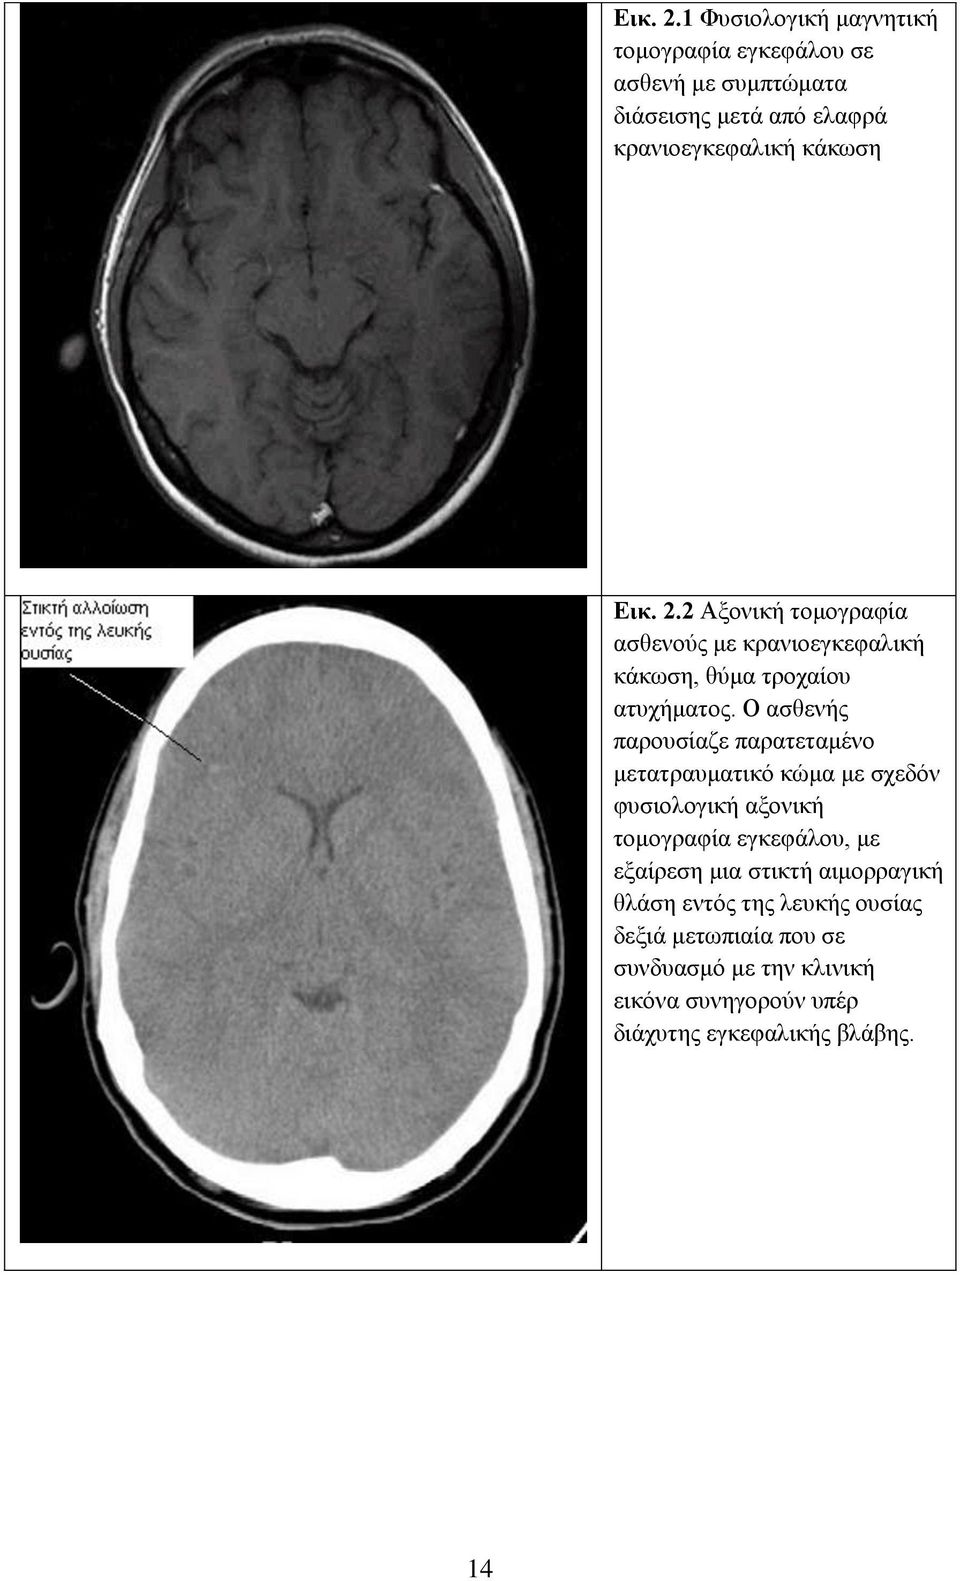 Ο ασθενής παρουσίαζε παρατεταμένο μετατραυματικό κώμα με σχεδόν φυσιολογική αξονική τομογραφία εγκεφάλου, με εξαίρεση